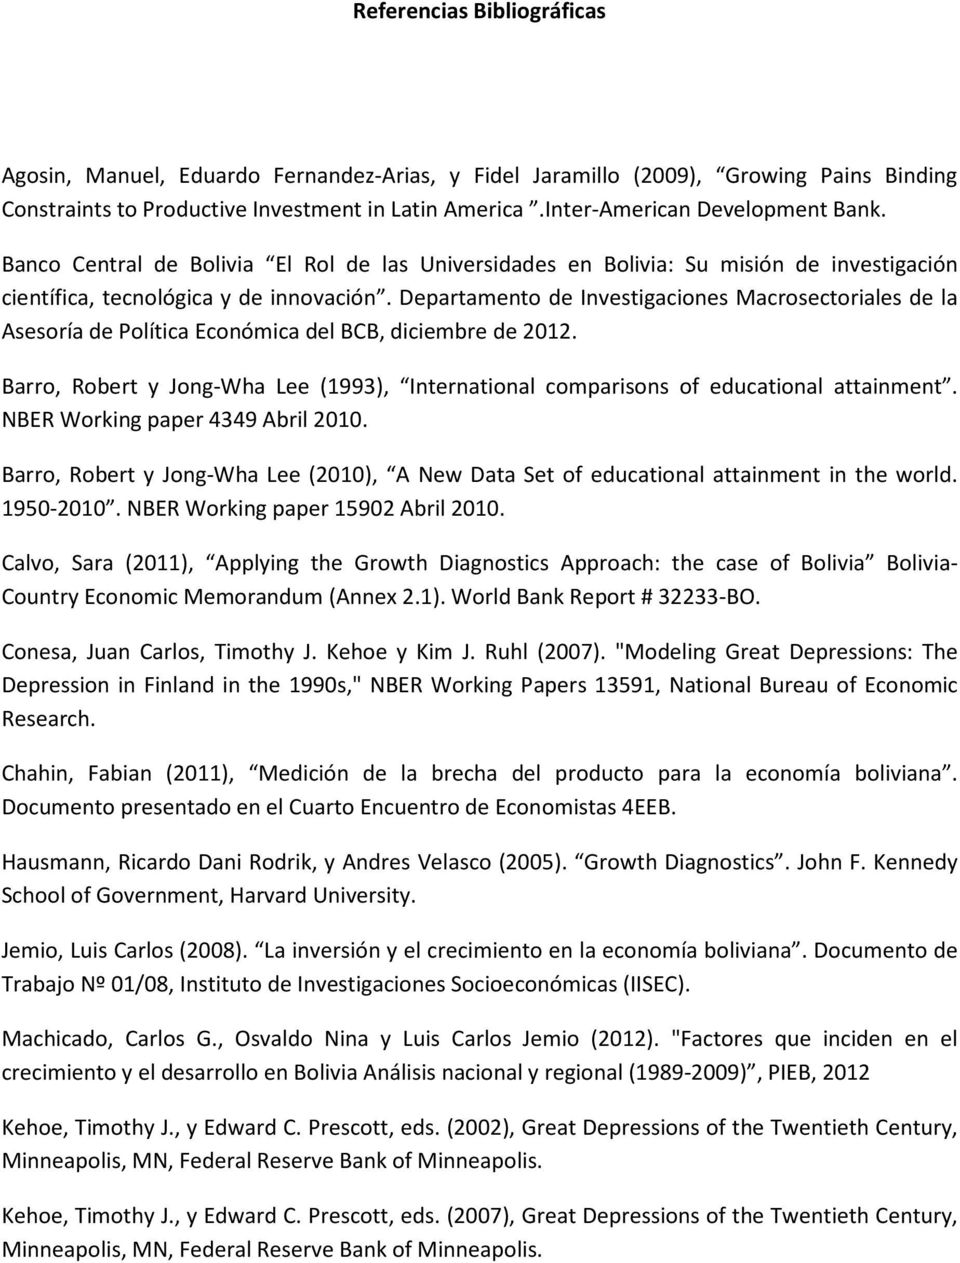 Deparameno de Invesigaciones Macrosecoriales de la Asesoría de Políica Económica del BCB, diciembre de 2012. Barro, Rober y Jong-Wha Lee (1993), Inernaional comparisons of educaional aainmen.